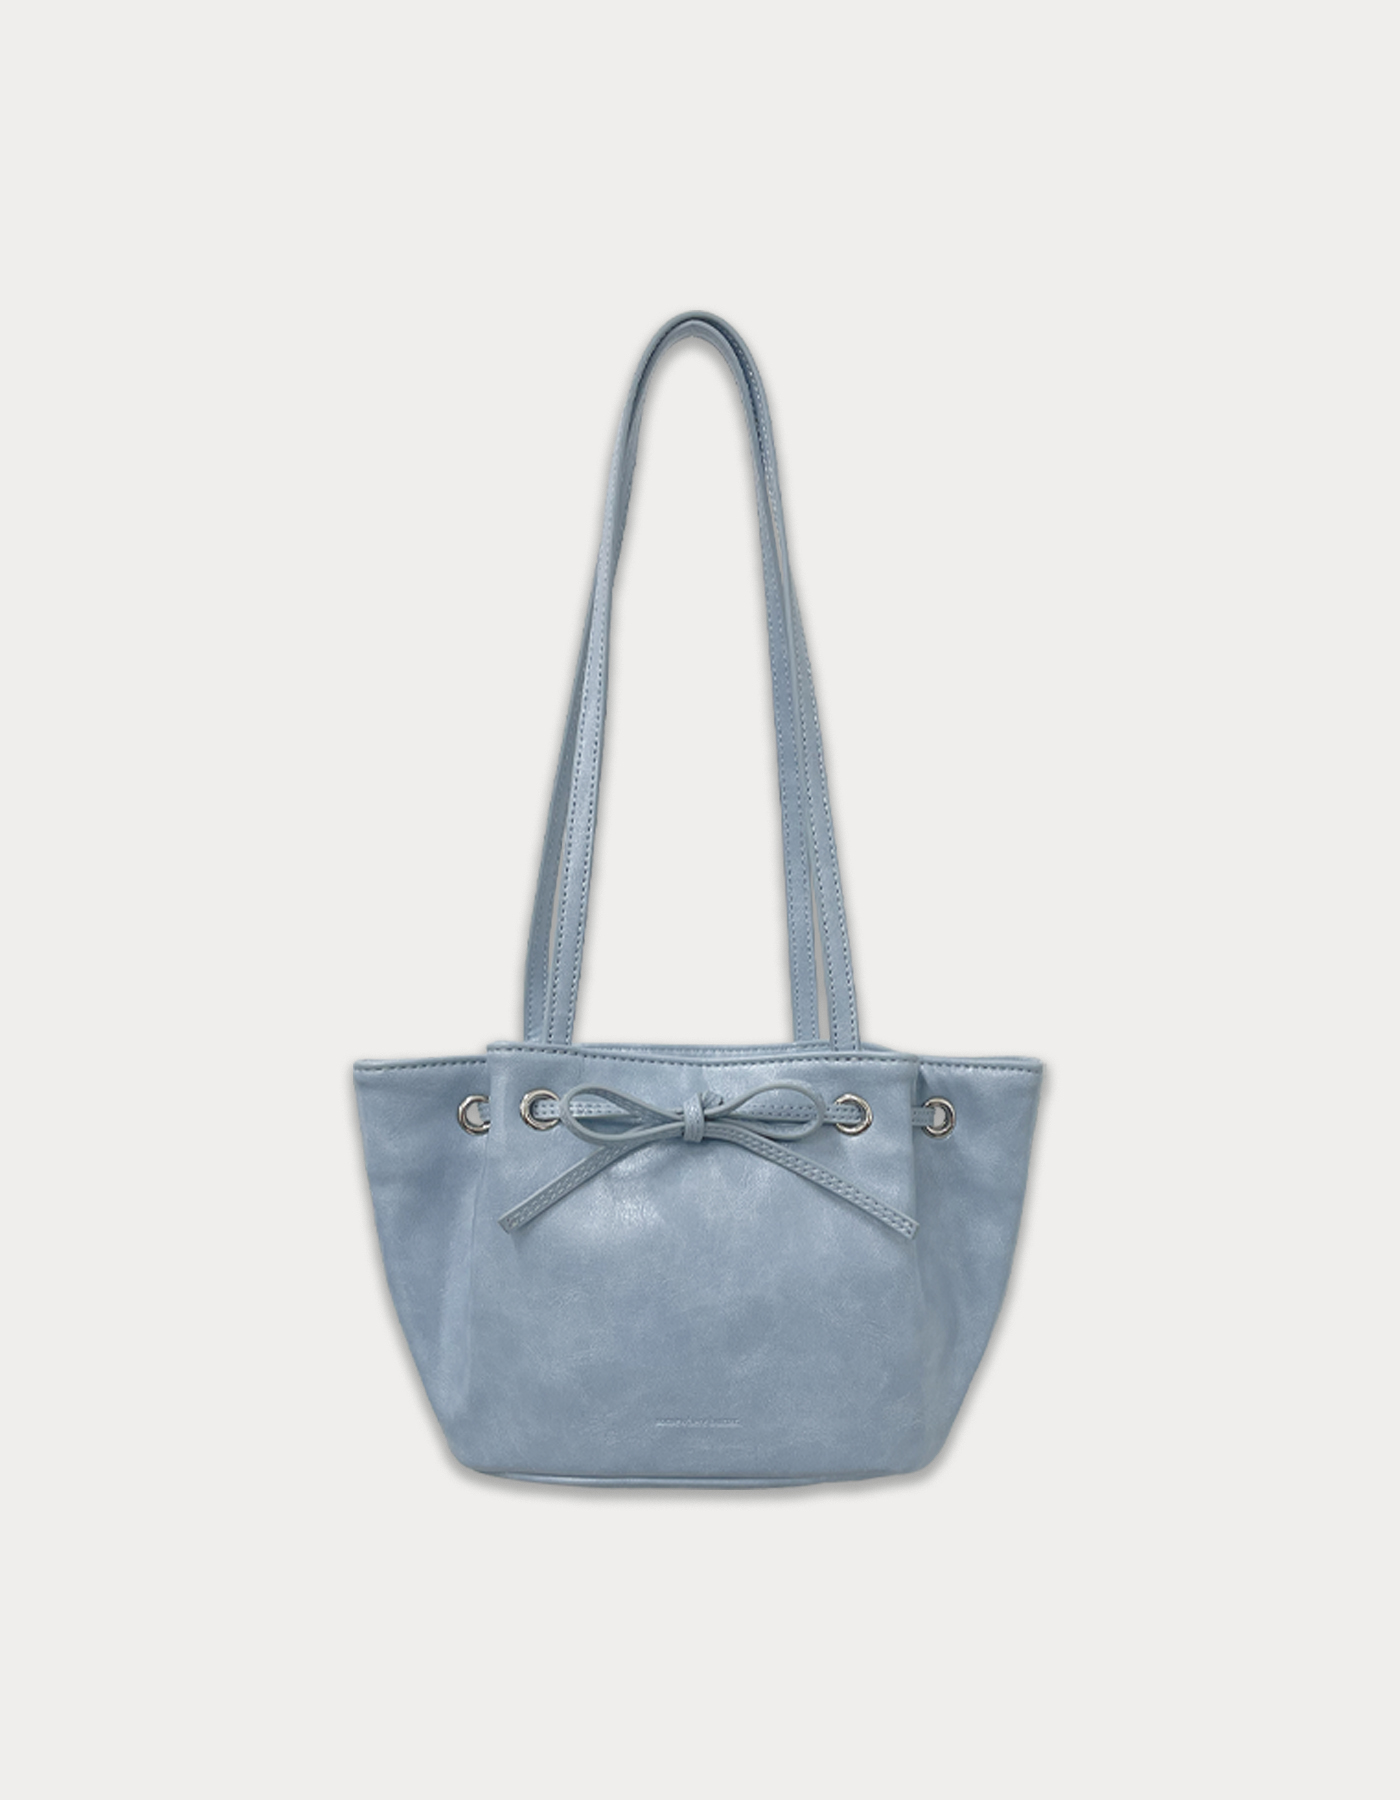 Sophie bag - baby blue